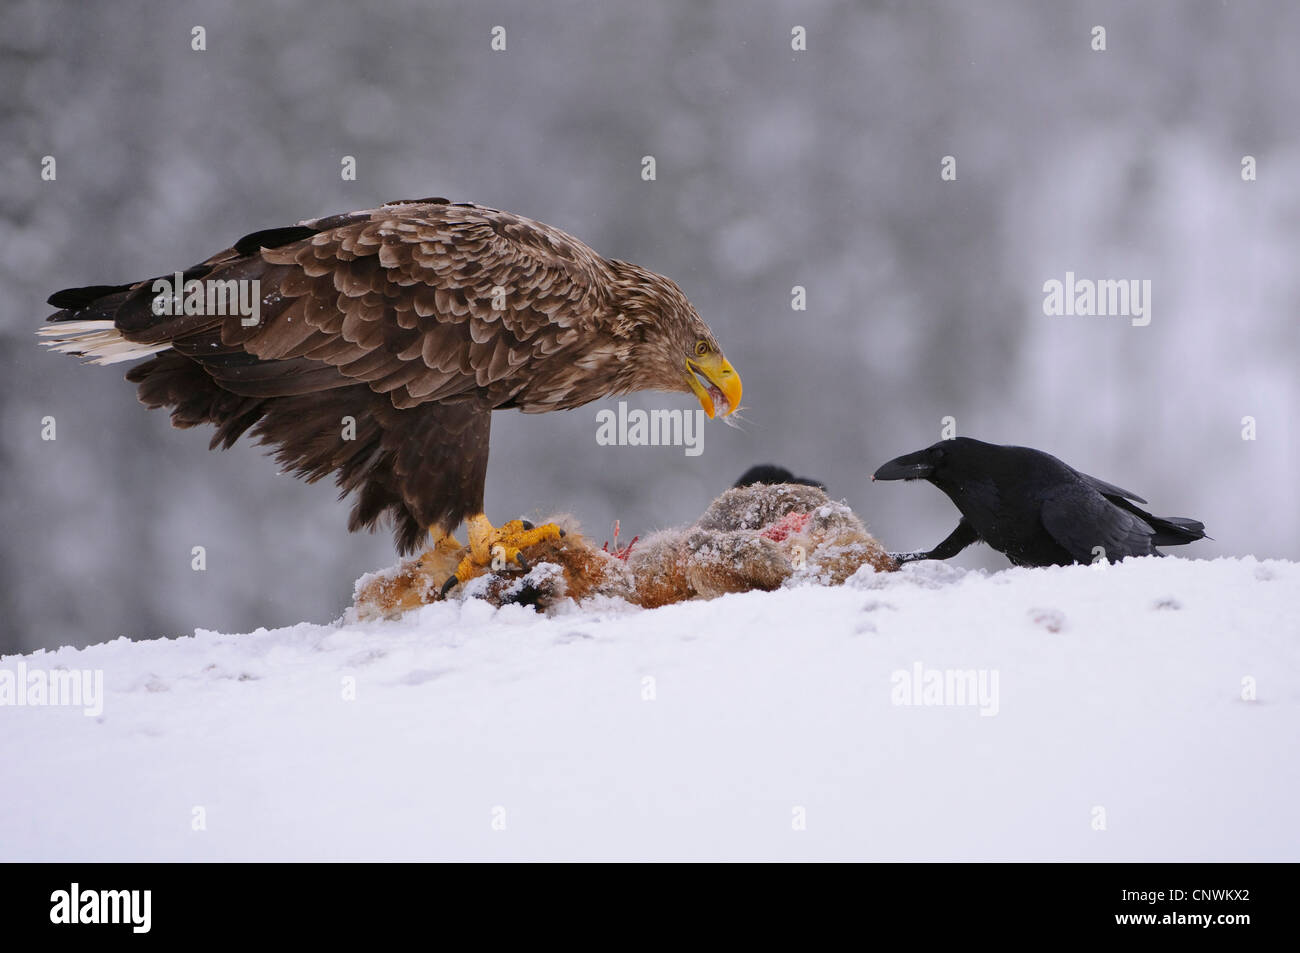 Pygargue à queue blanche (Haliaeetus albicilla), se nourrissent d'une carcasse de fox avec un hooded crow, Norvège Banque D'Images